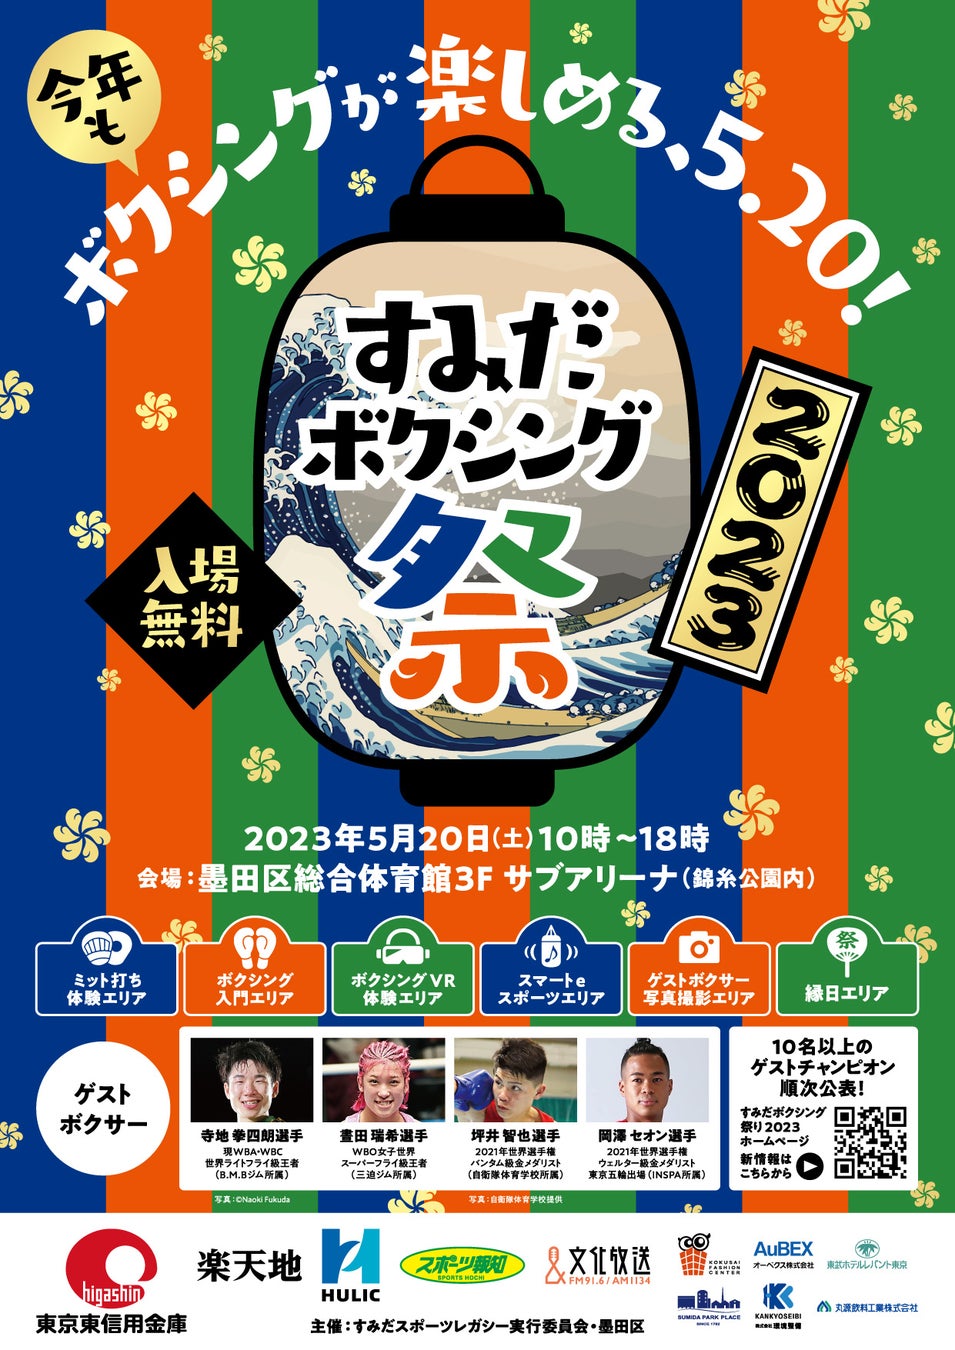 東京2020レガシー事業 ‵‵すみだボクシング祭り2023”開催!!のサブ画像2